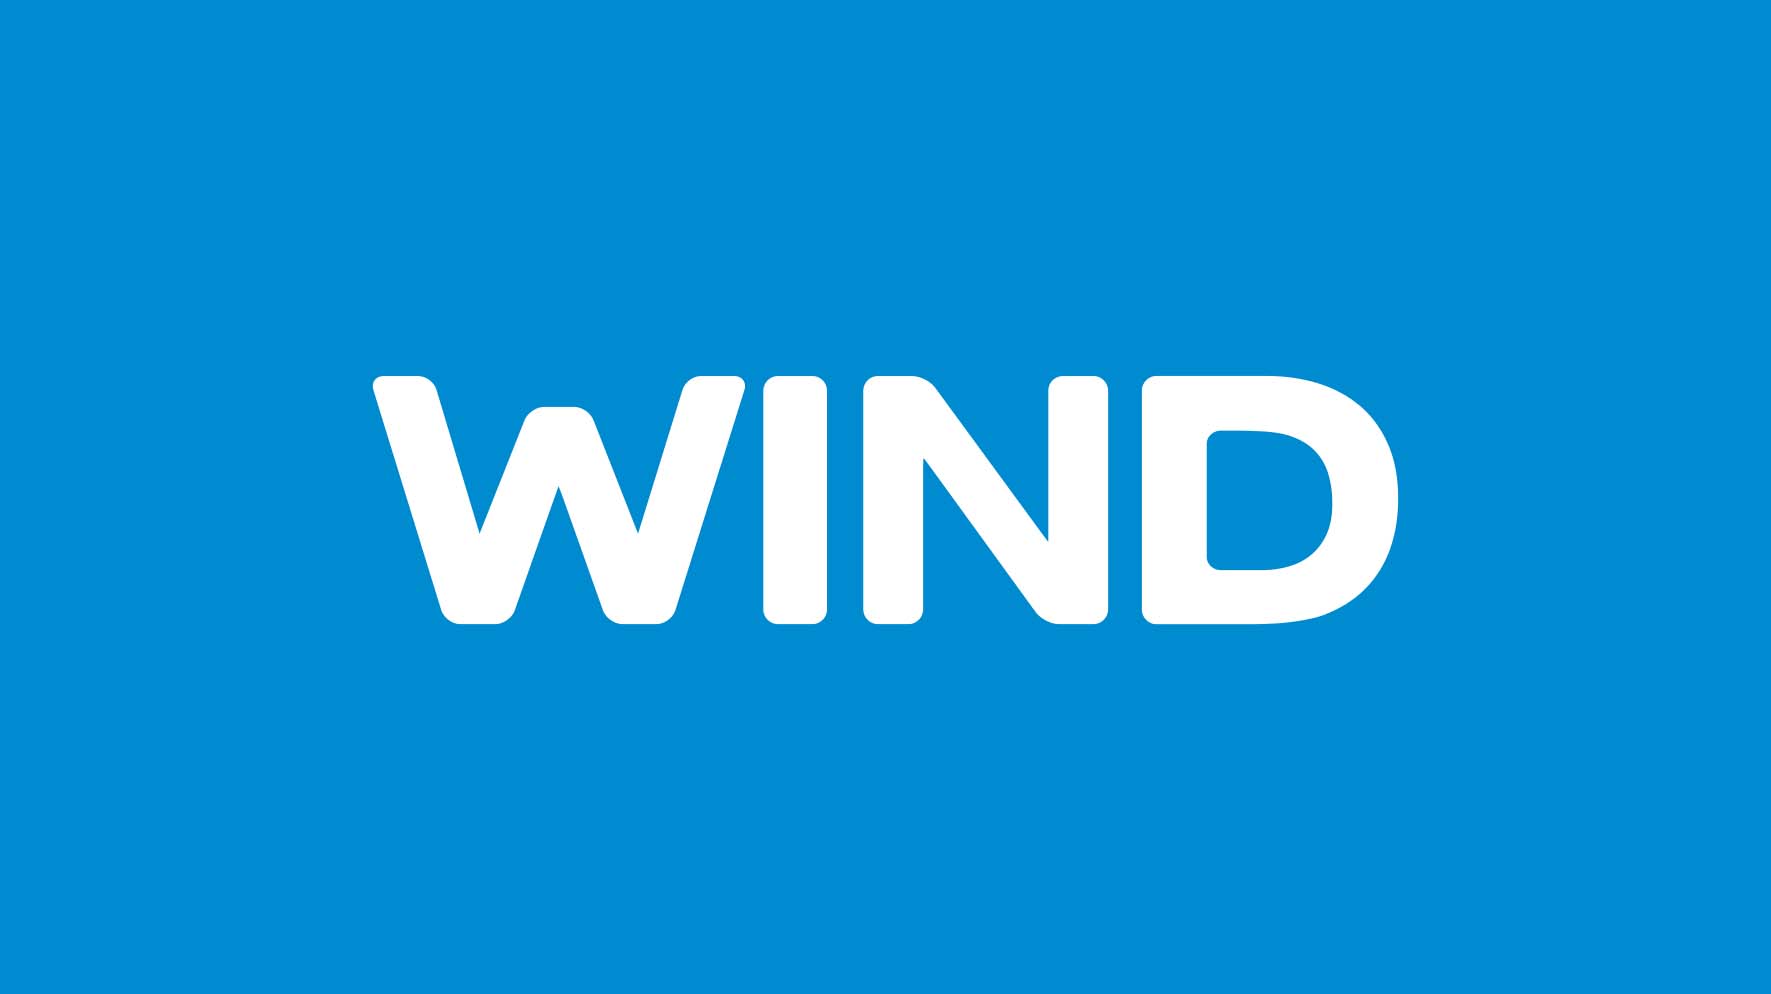 WIND Logo NEW ID